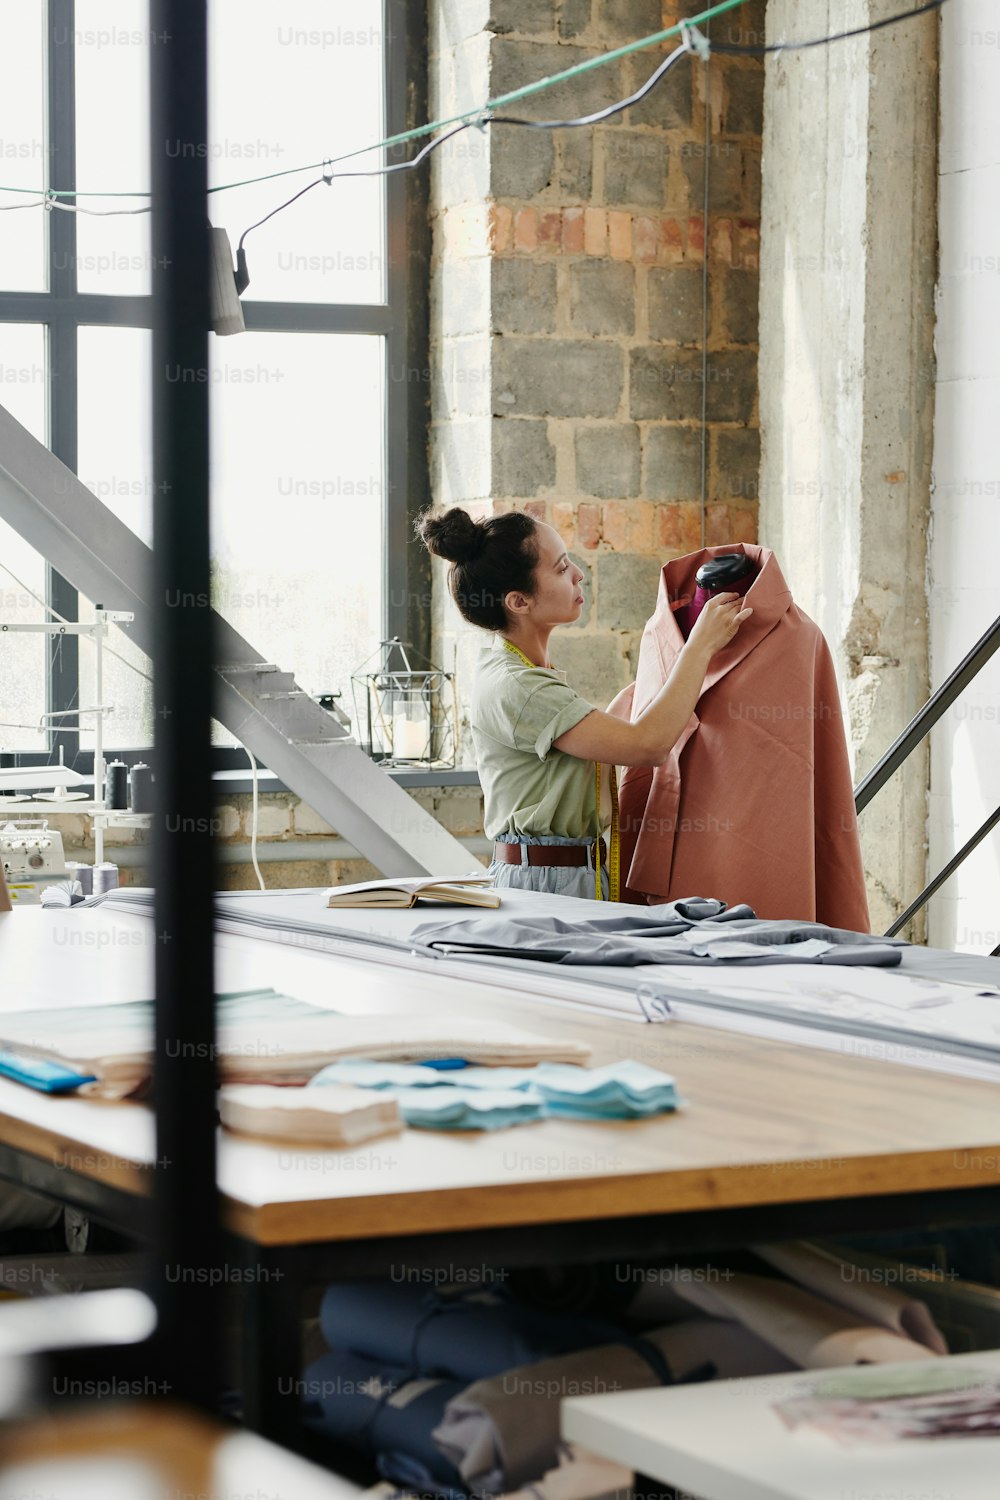 현대 패션 디자인 스튜디오의 여성 노동자는 작업장에서 새로운 계절 컬렉션을 작업하는 동안 더미에 의류 아이템을 바느질합니다.